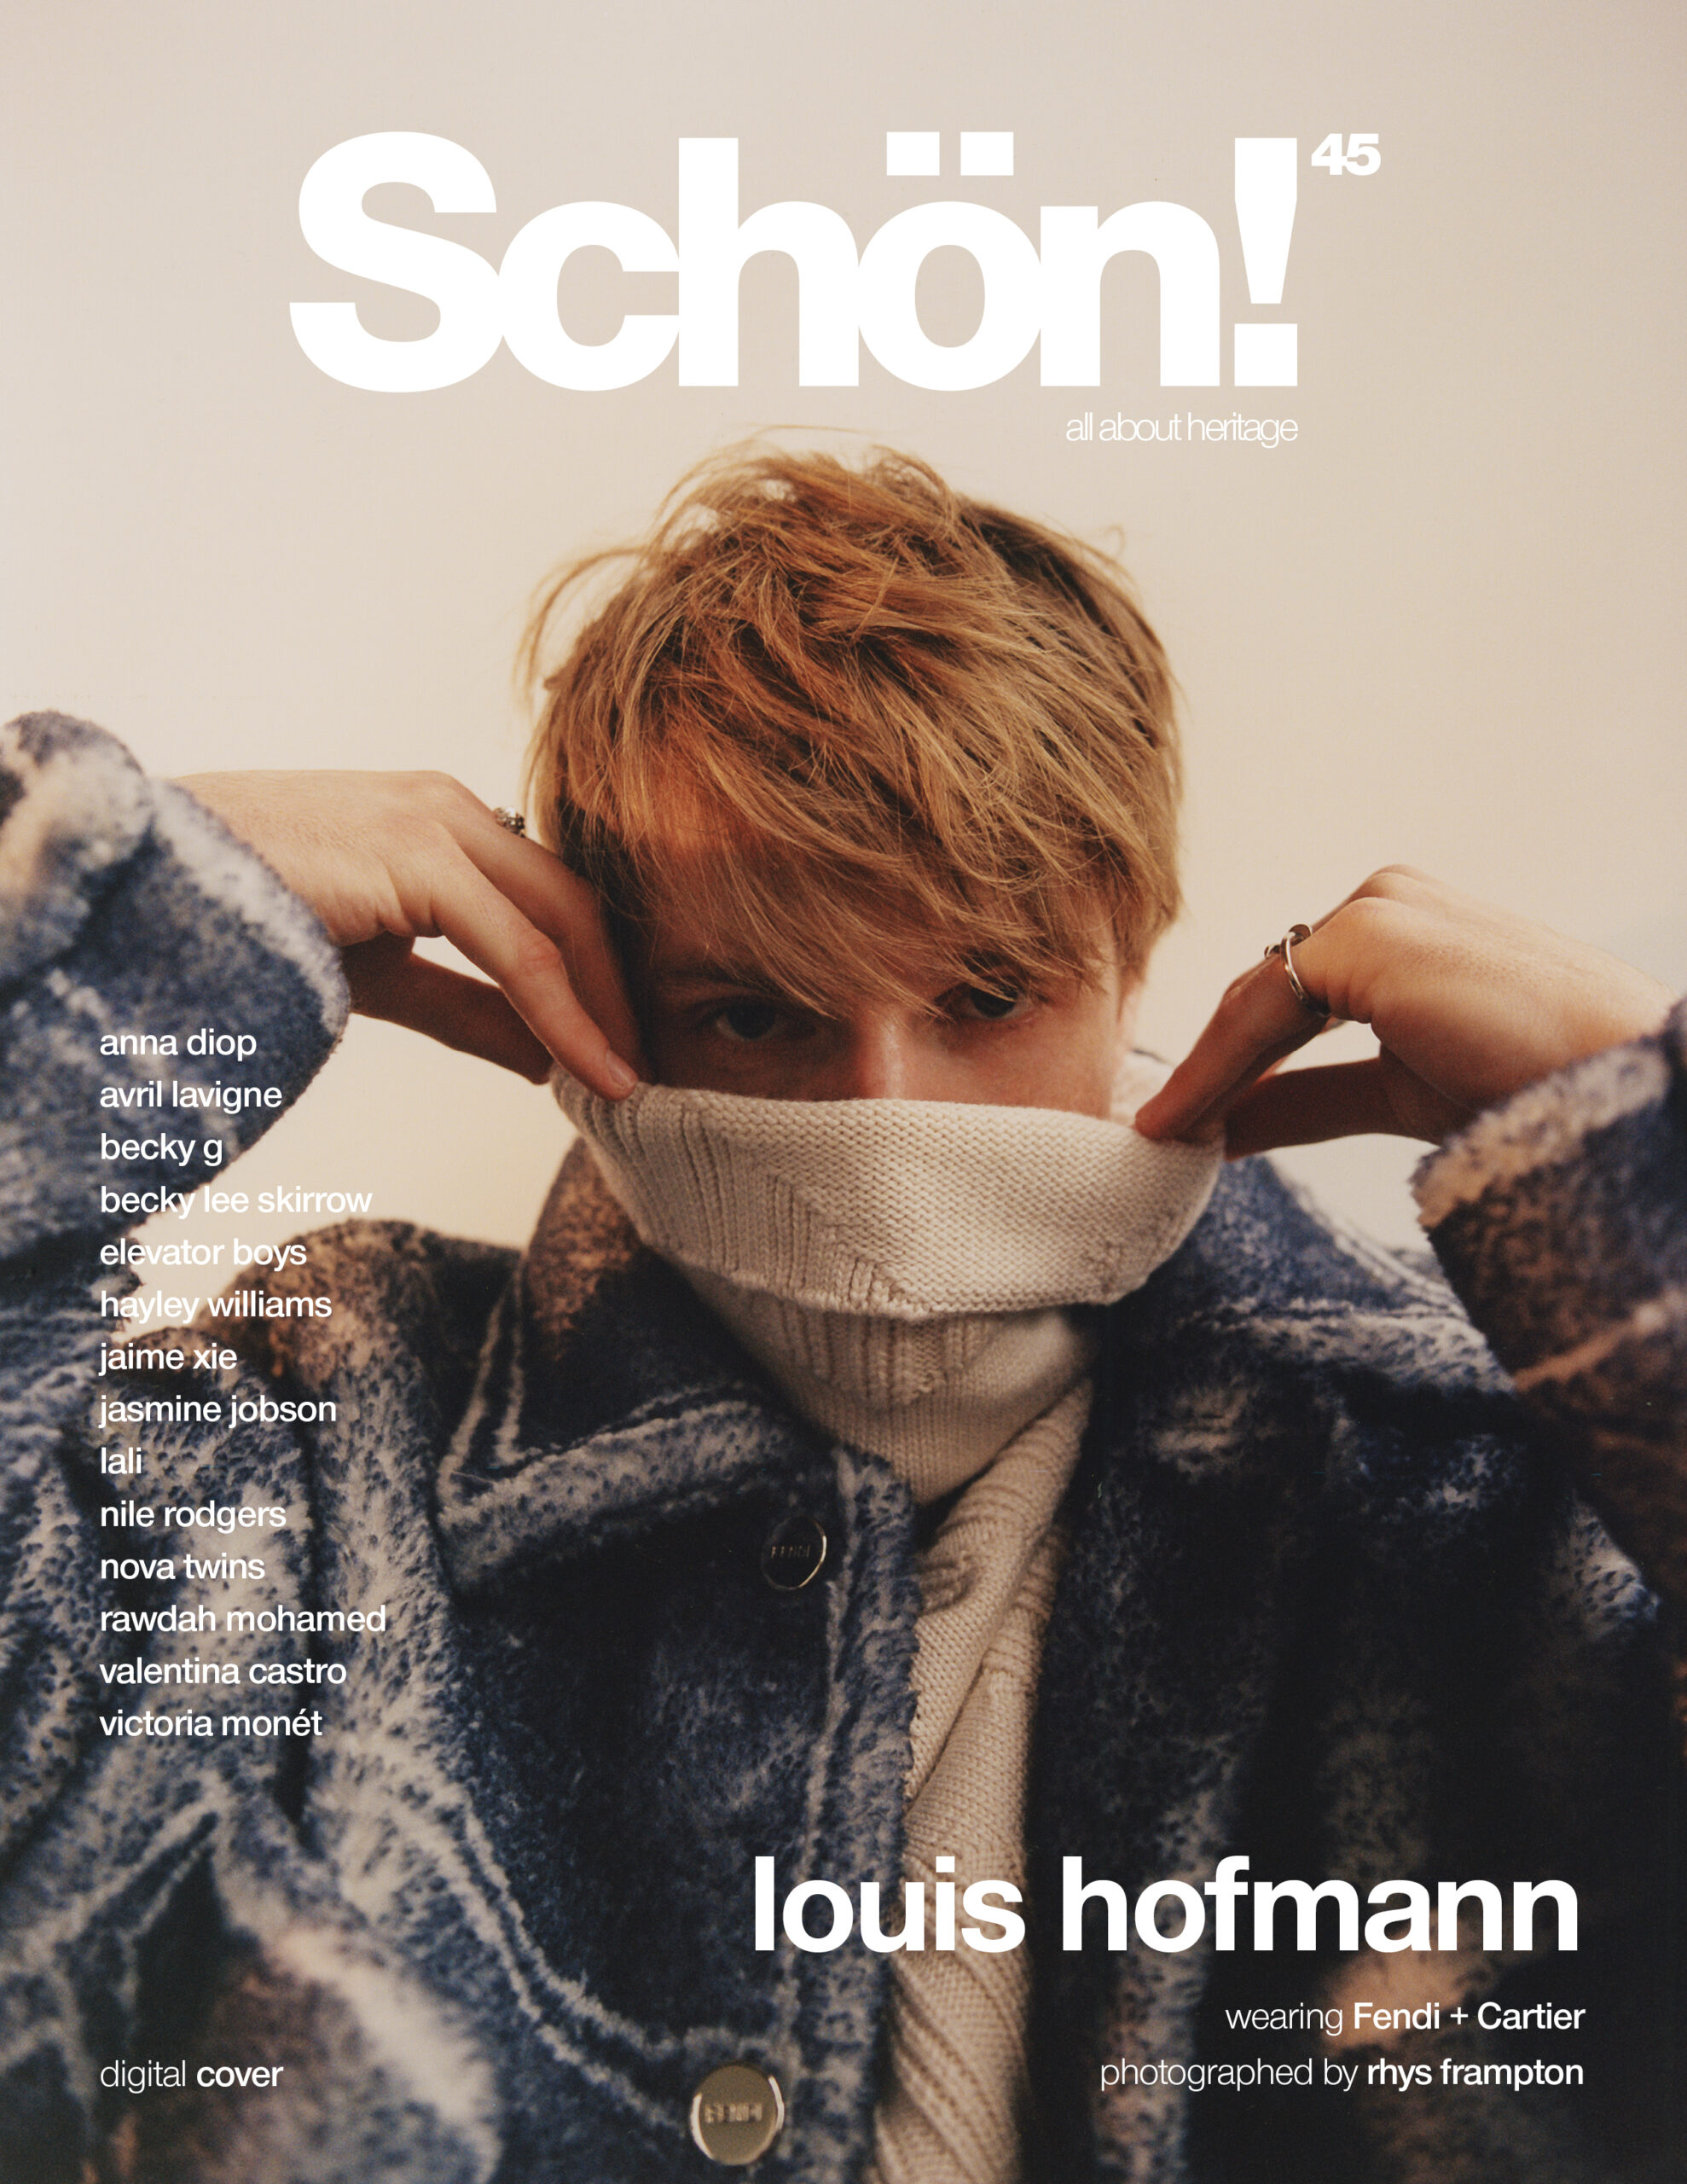 Schön! 45 digital cover  louis hofmann in Fendi + Cartier – Schön! Magazine